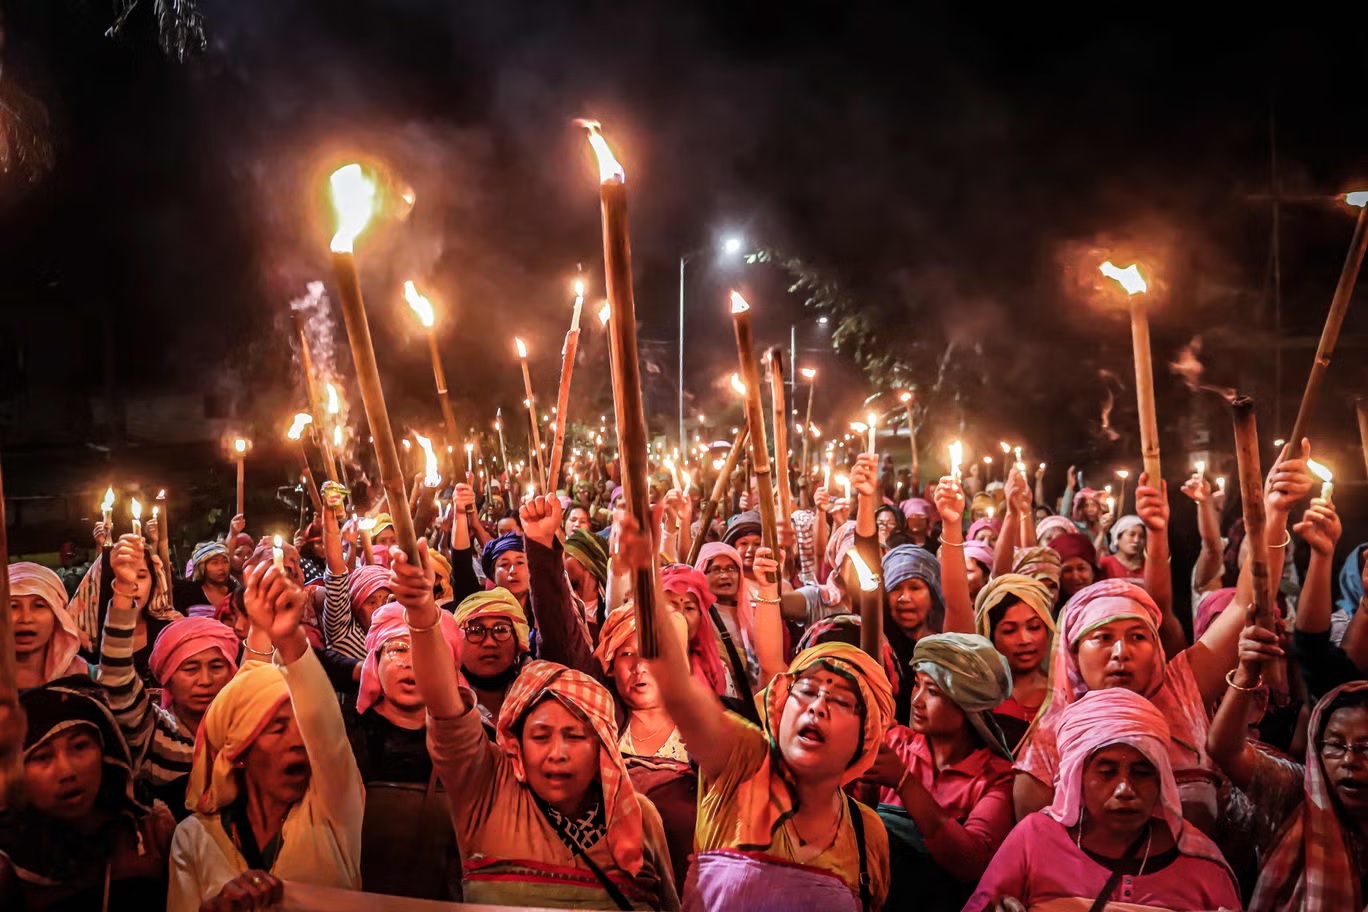 نساء منتسبات إلى "ميرا بايبس" وهي مجموعة من النساء اللائي يمثلن مجموعة "ميتي" يحملن المشاعل خلال تظاهرة في إمفال تطالب بإحلال السلام من جديد في ولاية مانيبور شمال شرقي الهند (أ ف ب/غيتي)